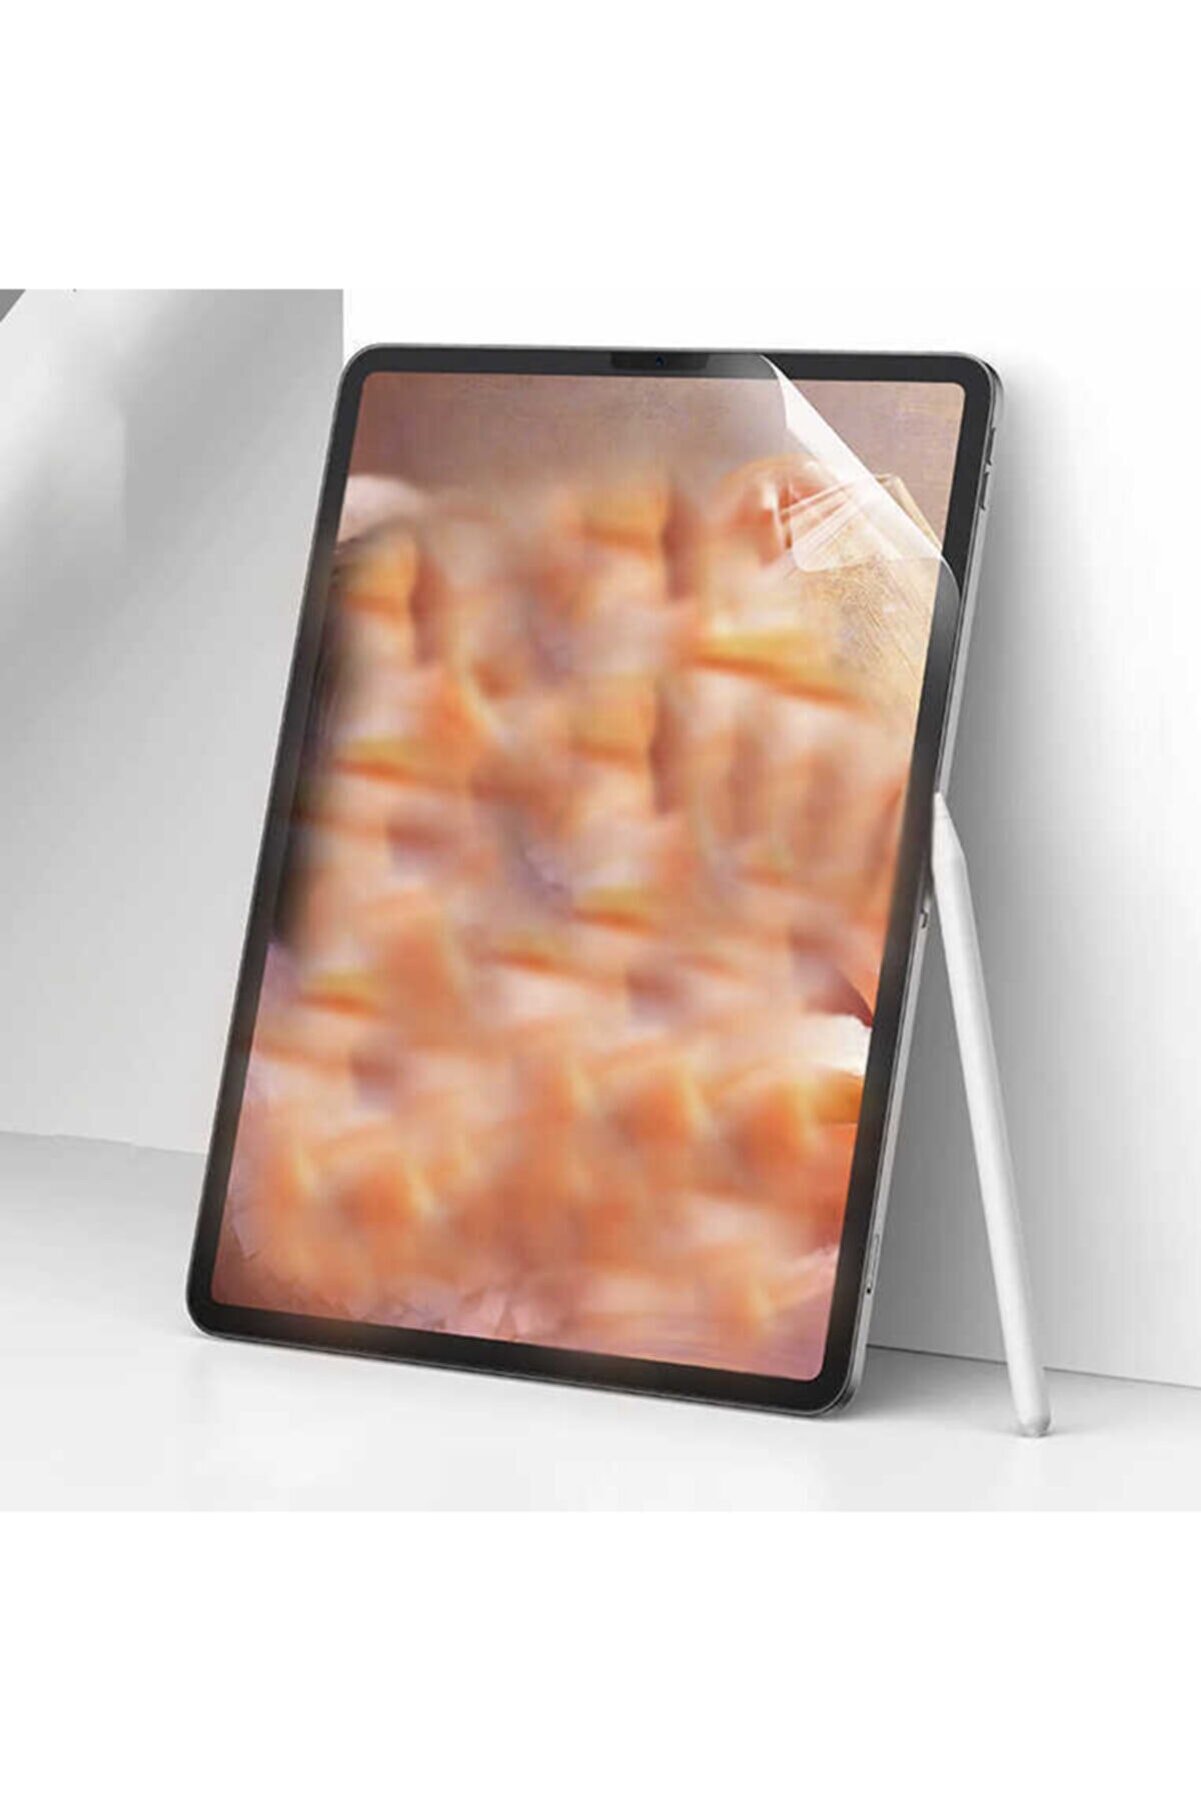 Zore Apple Ipad Pro 12.9" 2020 Ekran Koruyucu Paper-like Kağıt Hisli Çizim Için Özel Nano Koruyucu